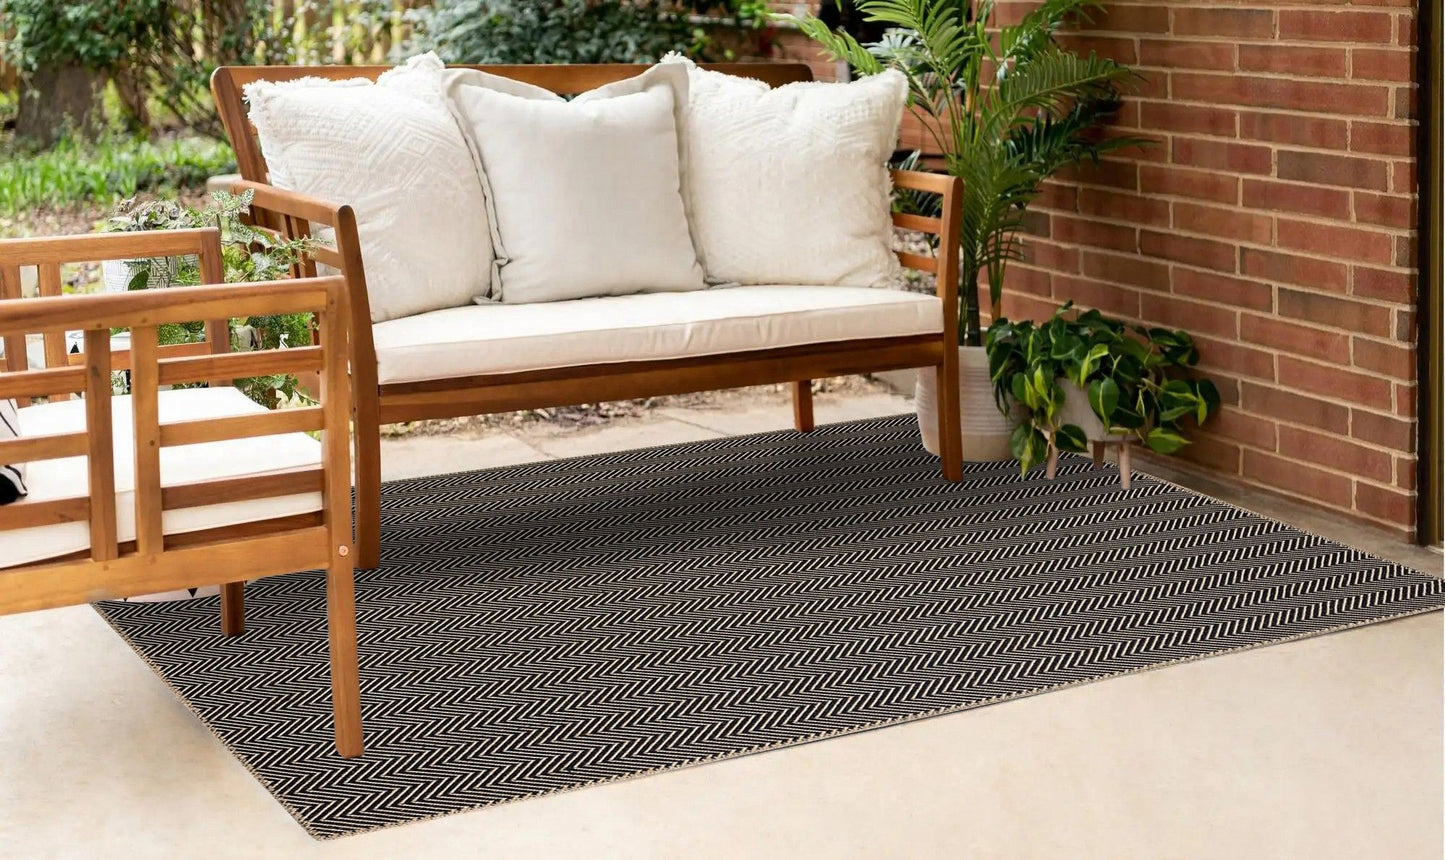 Friolero 2577 - Carpet (80 x 150)